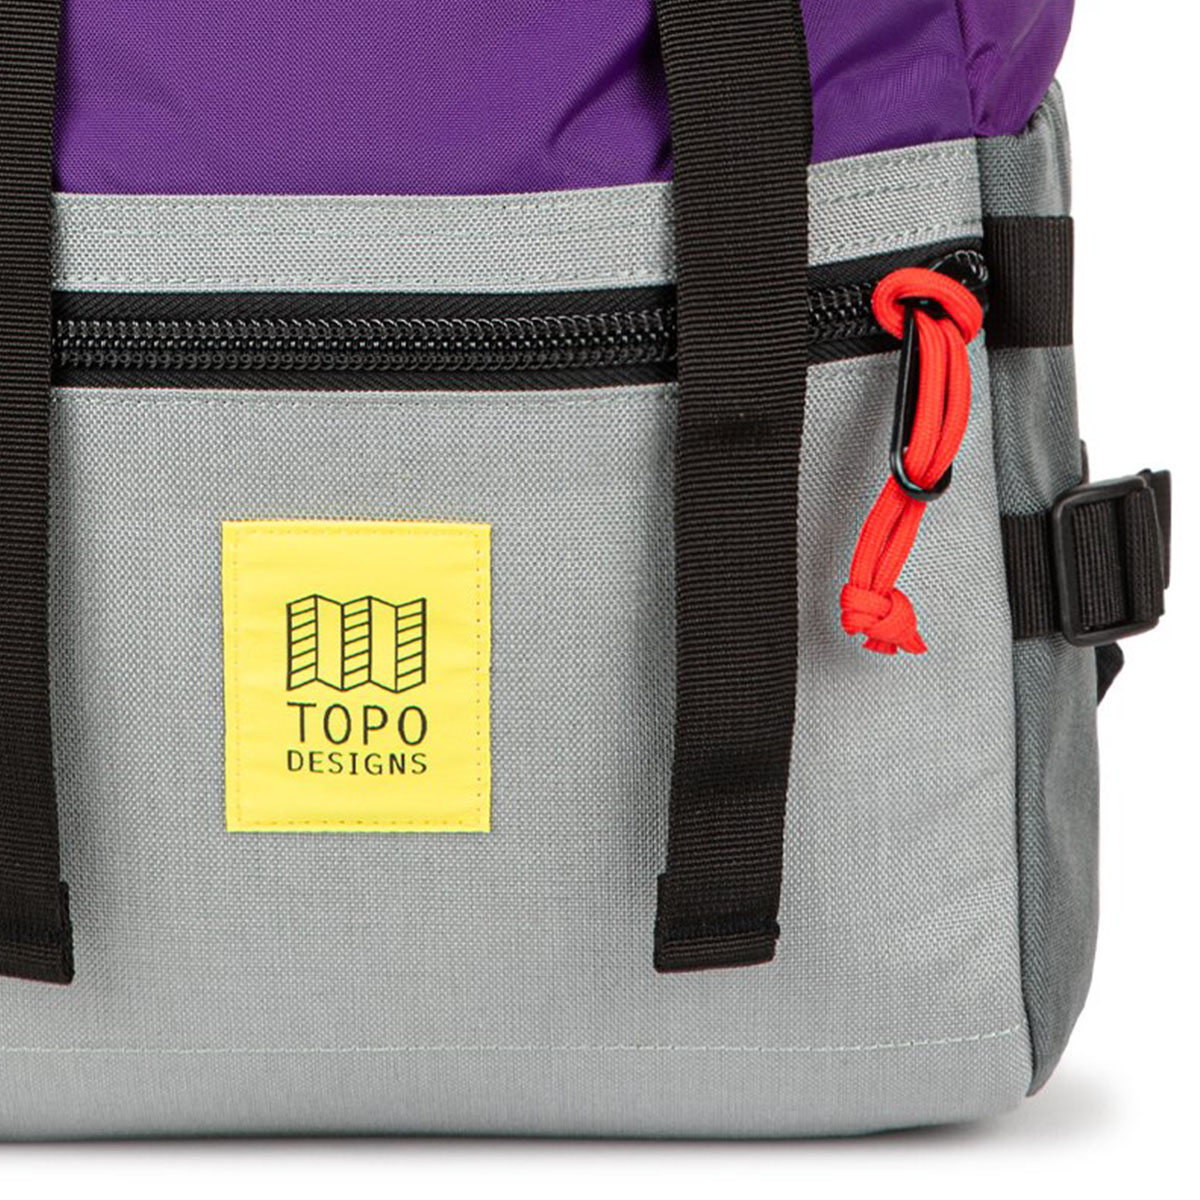 Topo Designs Rover Pack Classic Purple/Silver/Turquoise, der ideale Rucksack für den täglichen Gebrauch